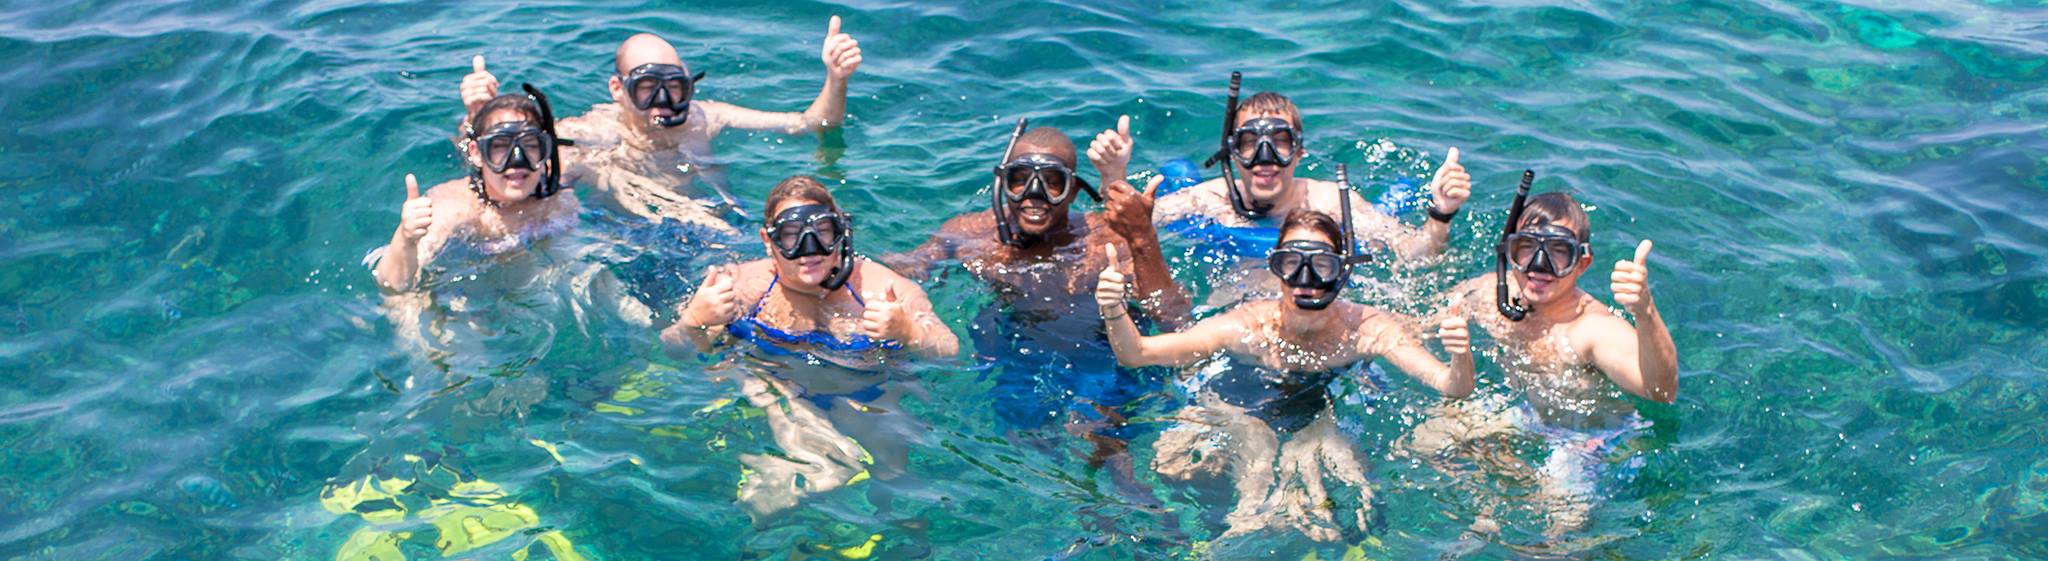 Safari Blue Sea Adventure - Safanta Tours & Travel Company Limited